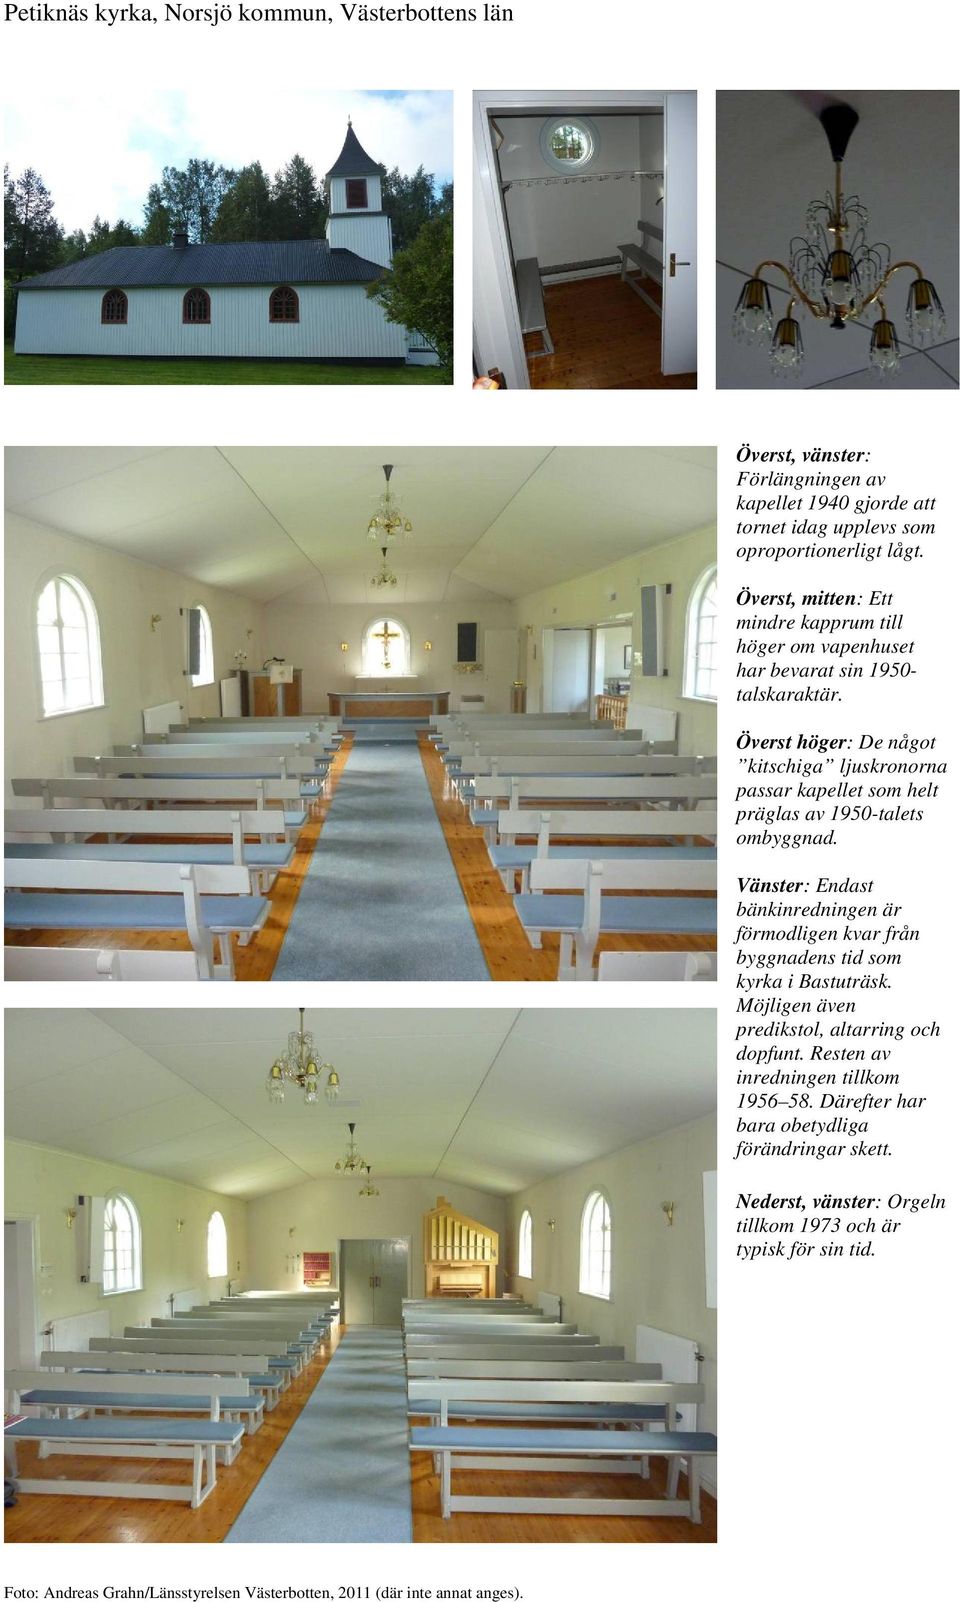 Överst höger: De något kitschiga ljuskronorna passar kapellet som helt präglas av 1950-talets ombyggnad.